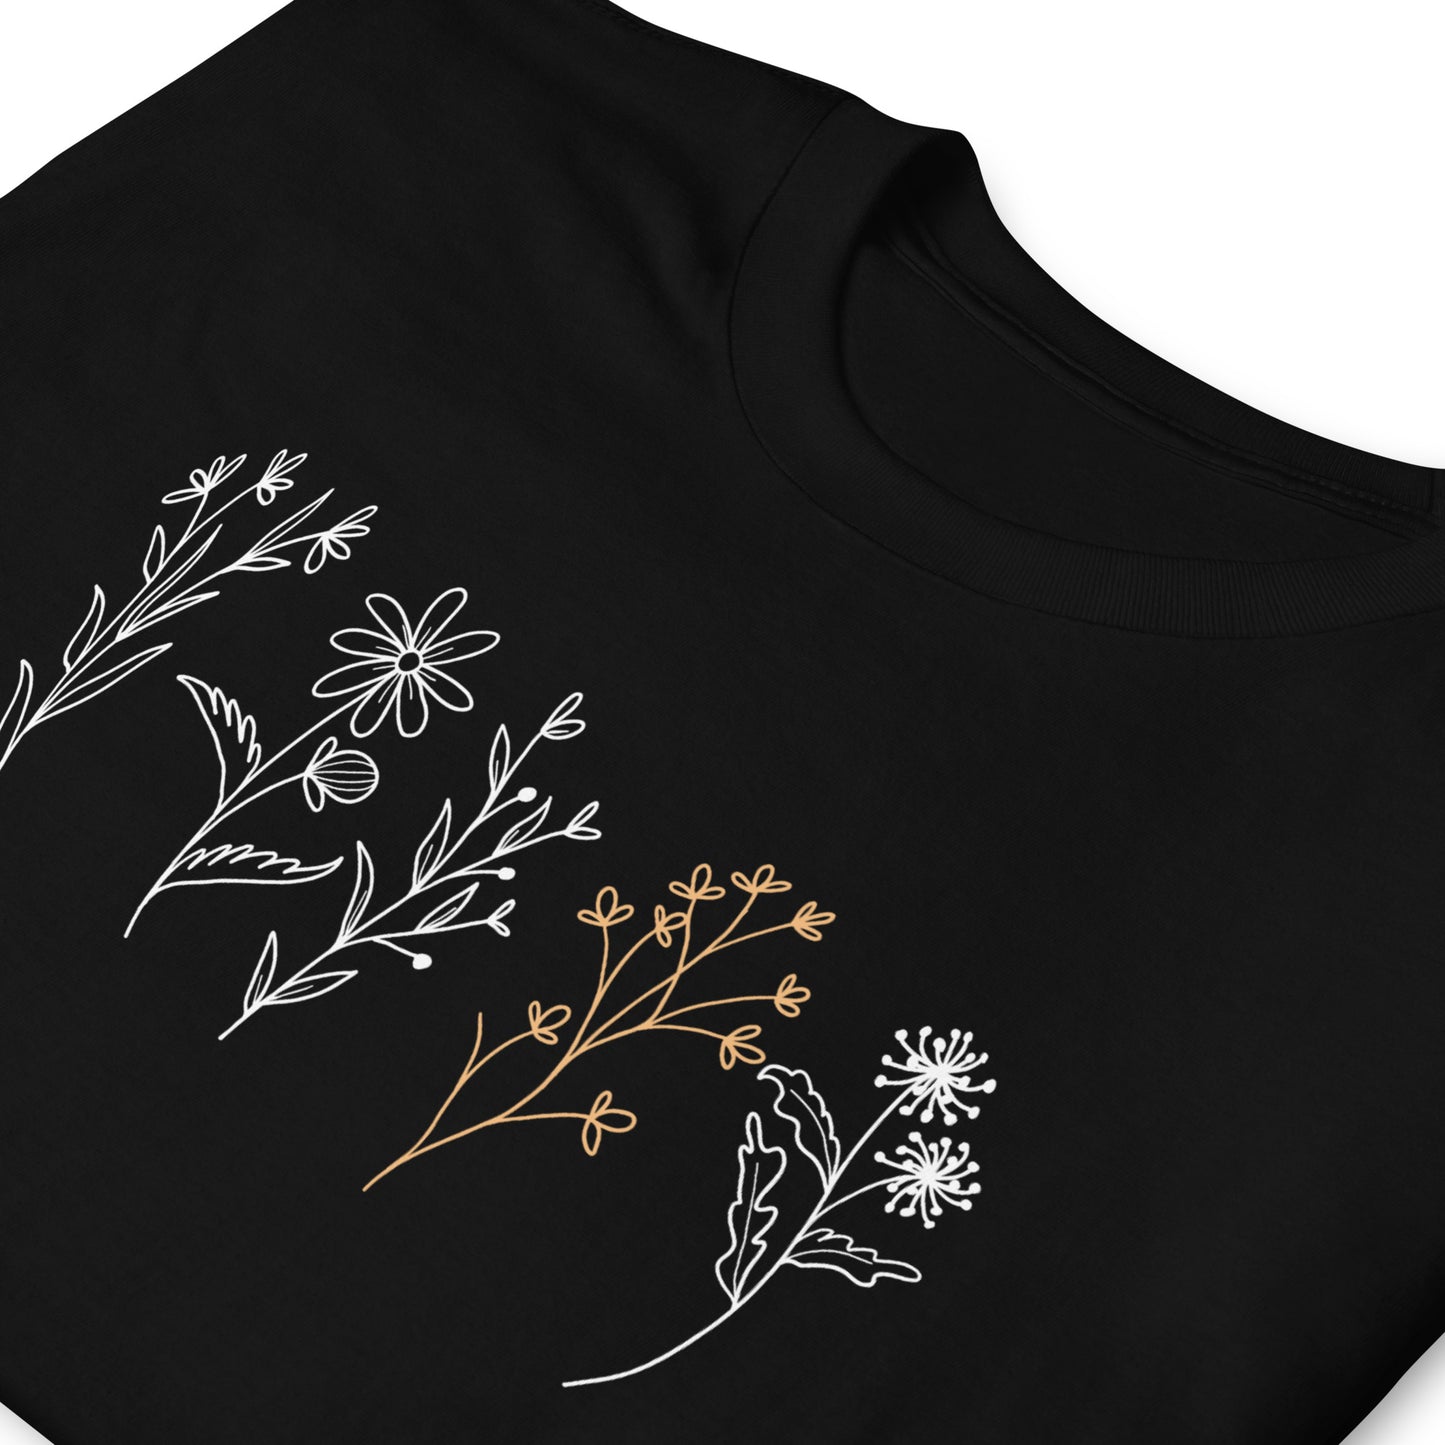 Unisex T-Shirt: Five Wild Meadow Flowers